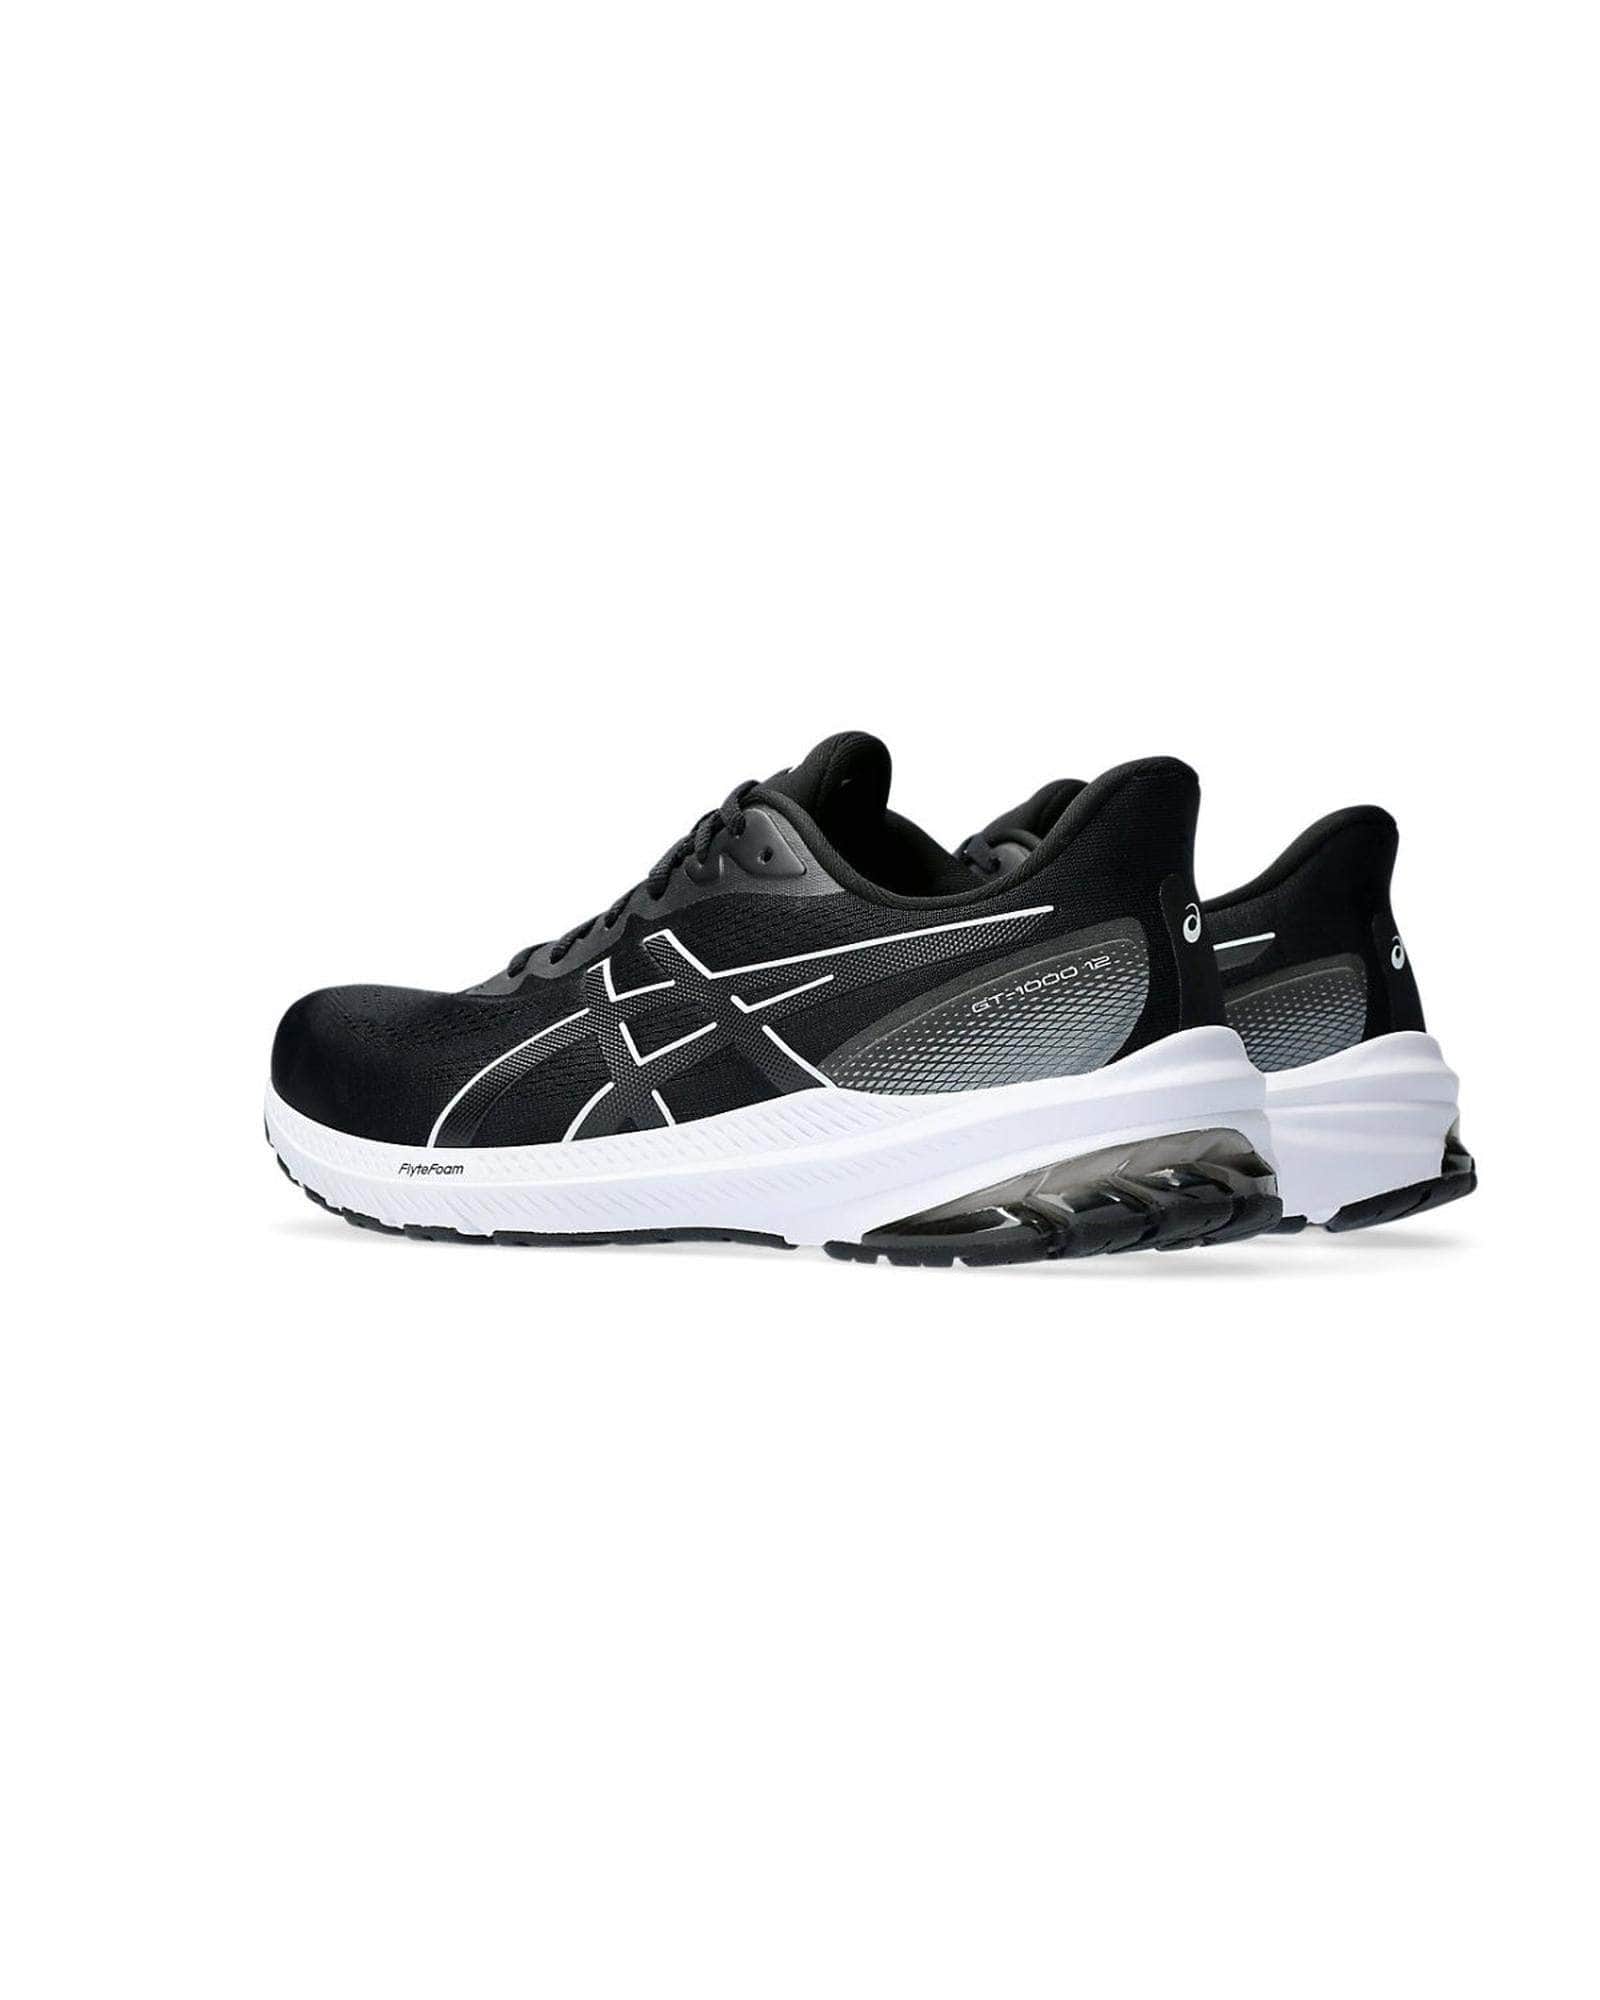 Asics Black White Shoes Versatile Runner